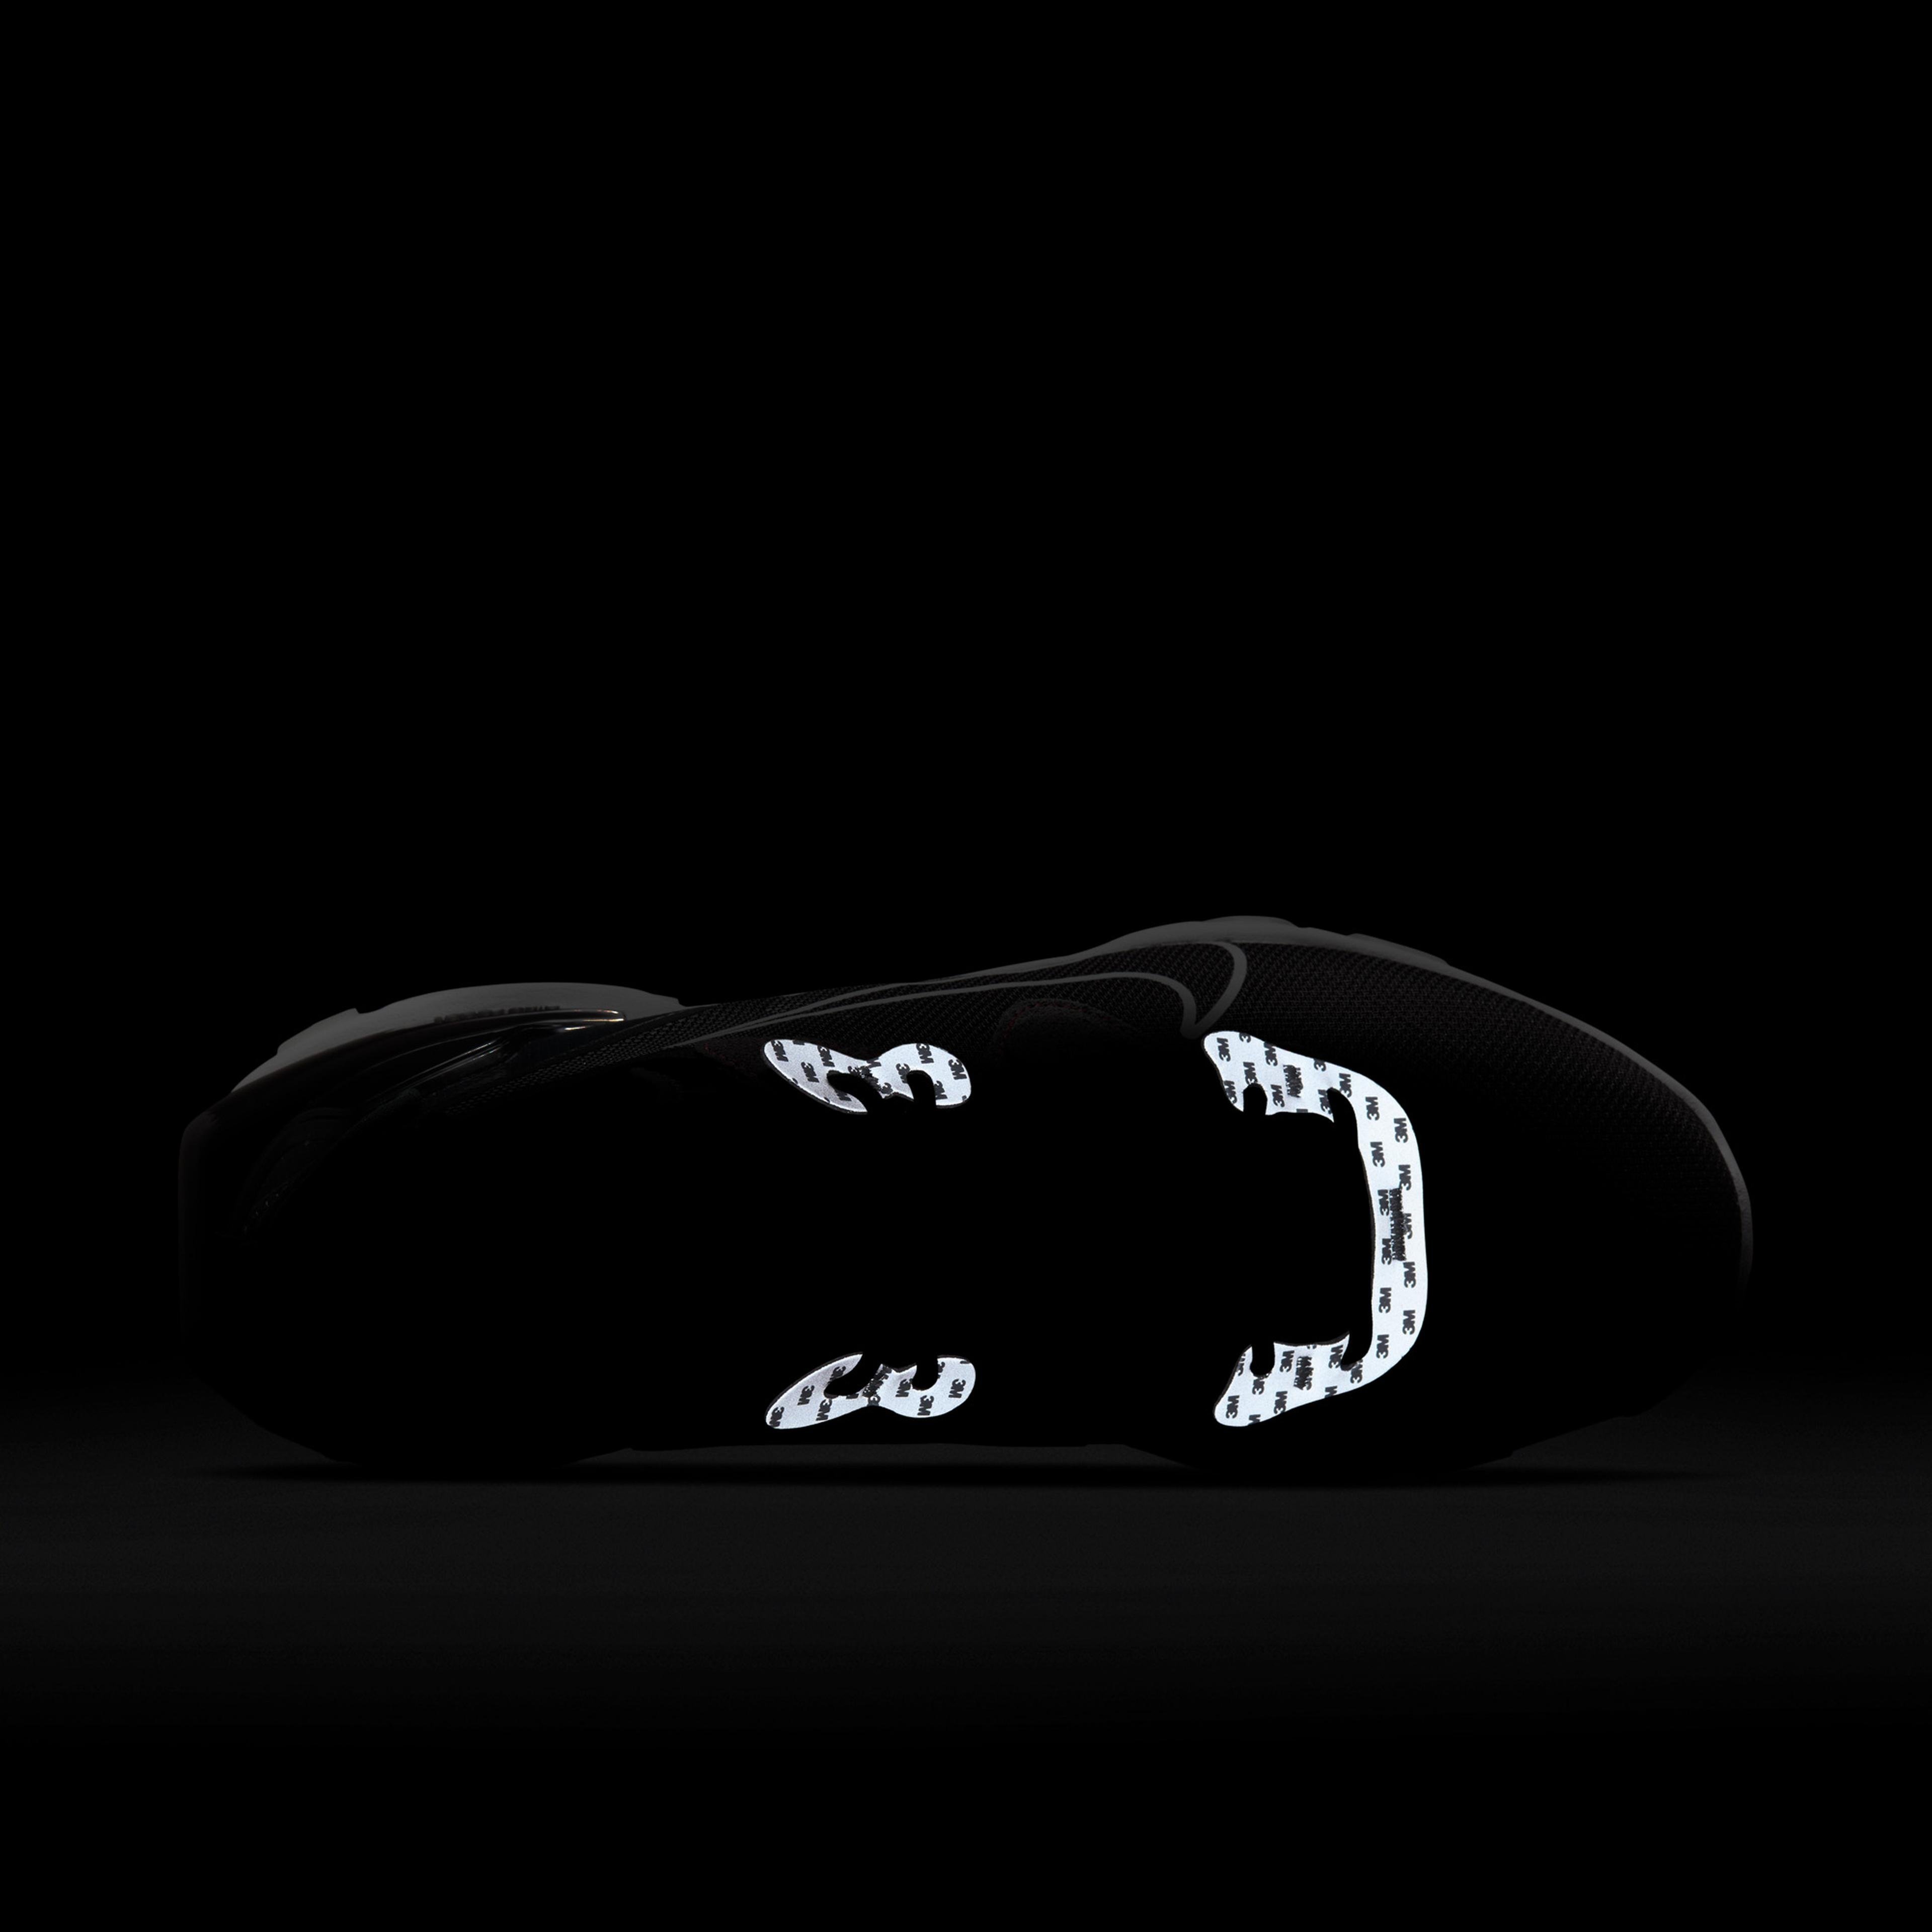 Nike React Vision 3M Erkek Siyah Spor Ayakkabı